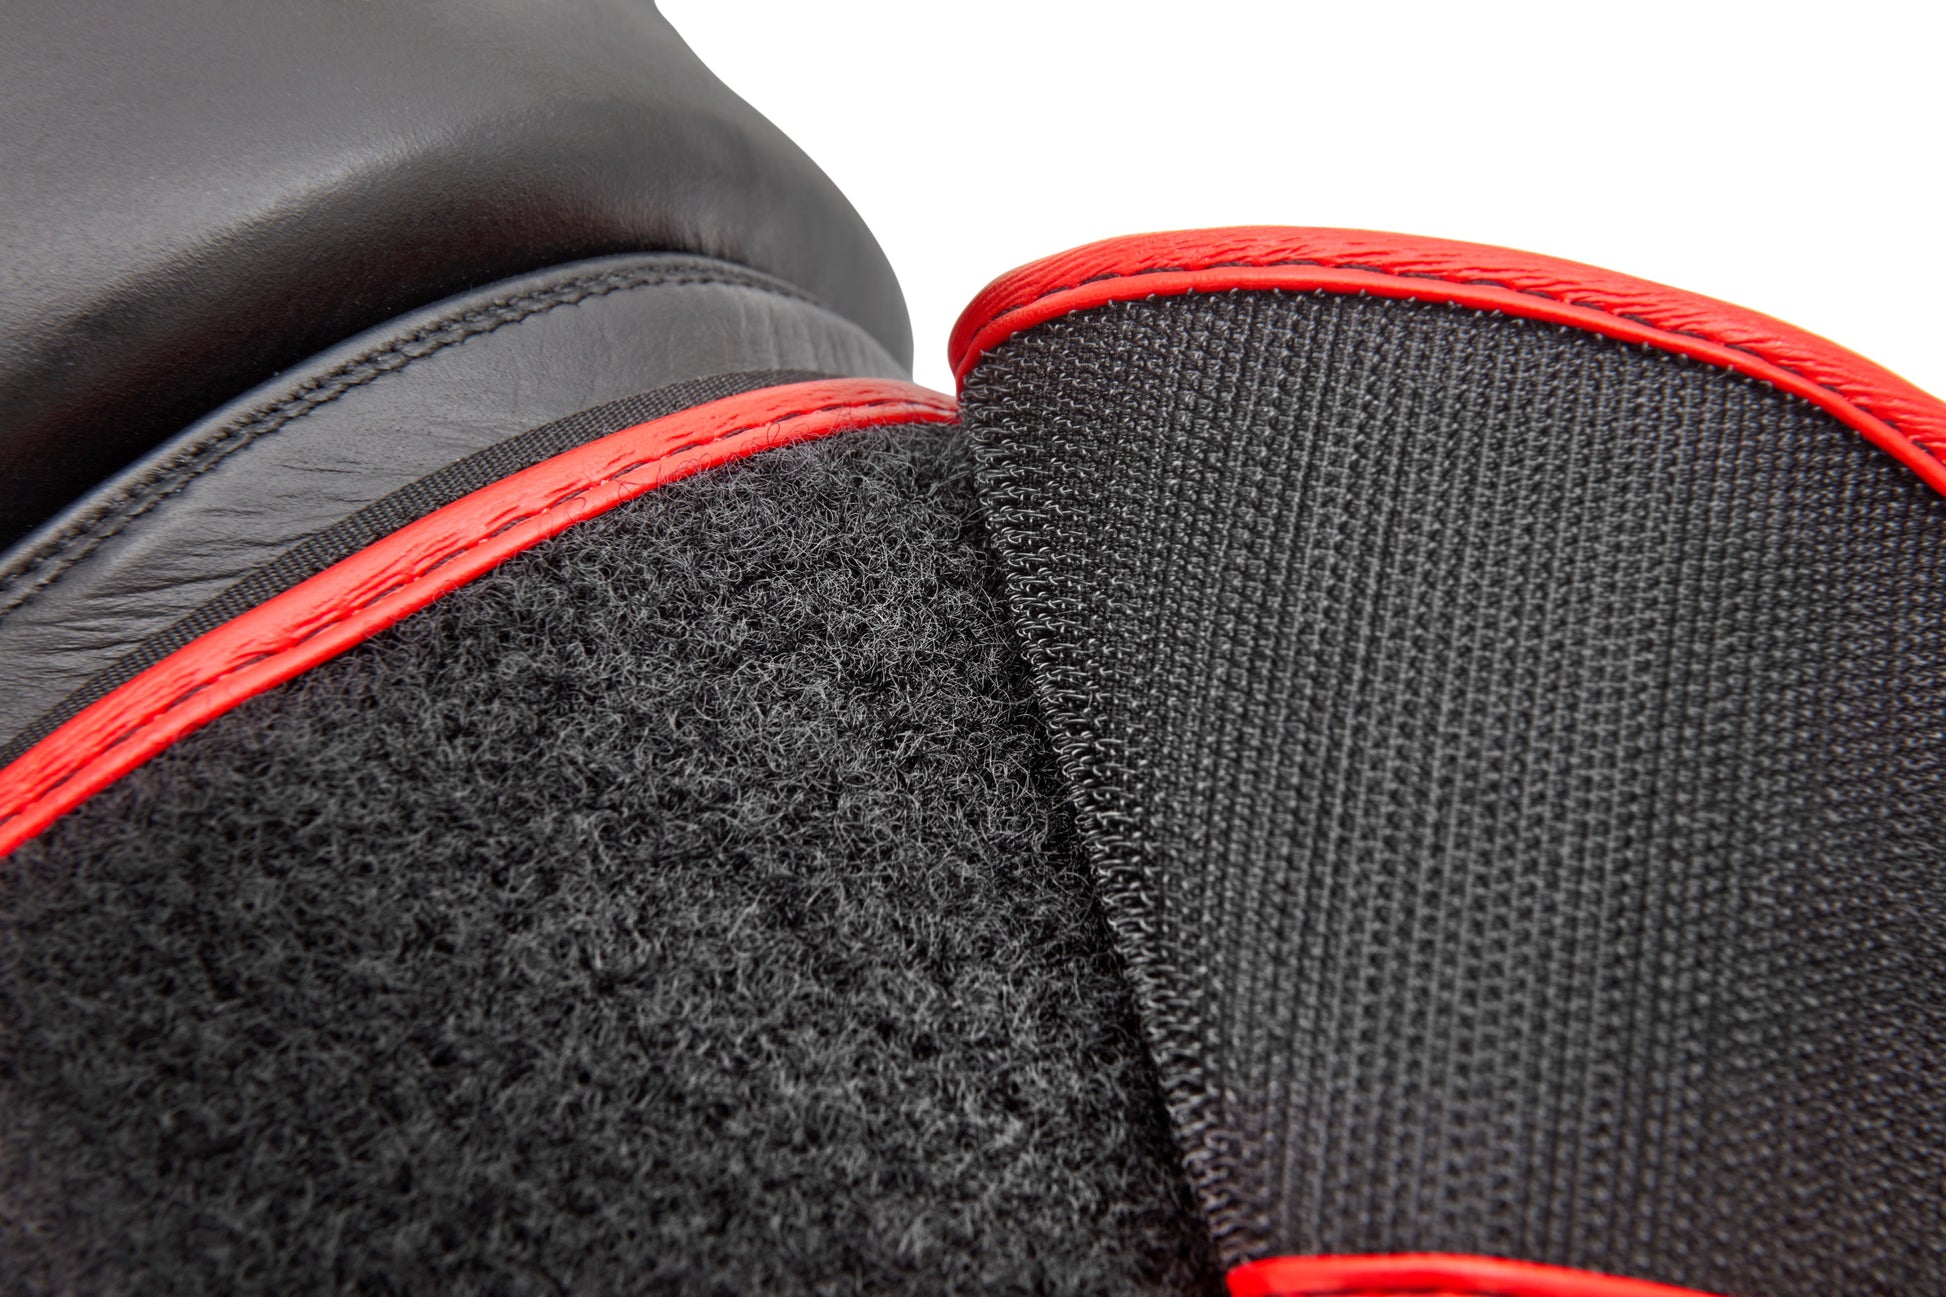 guantes de box reebok cuero 12 oz negro rojo